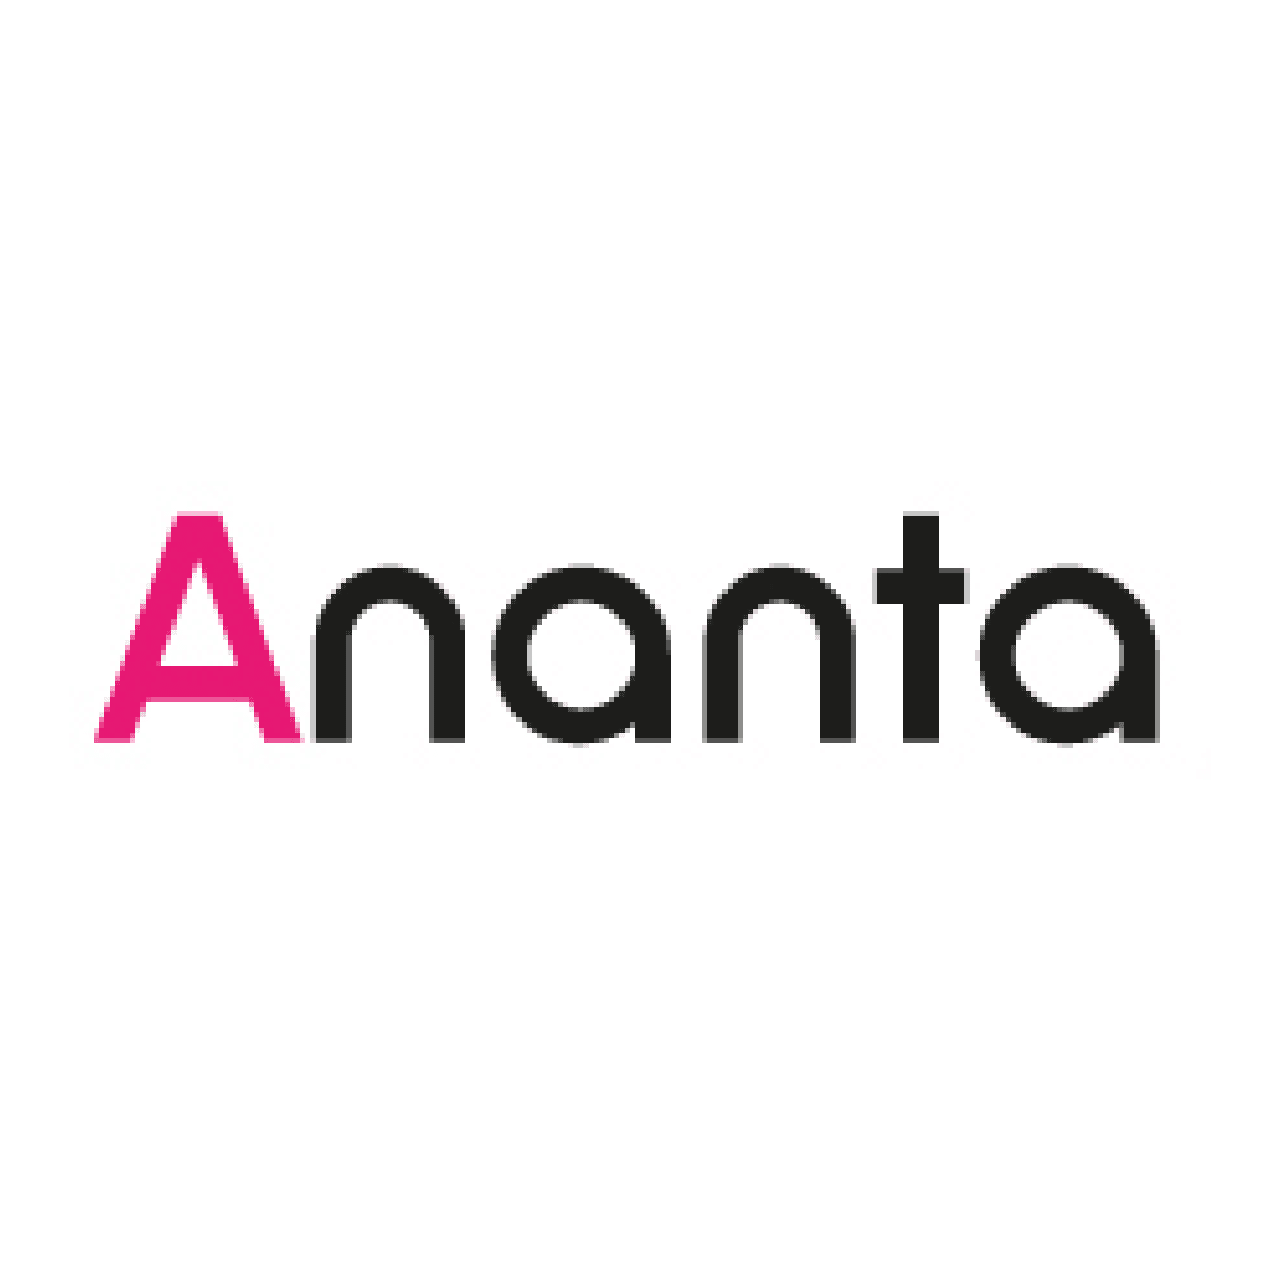 Ananta